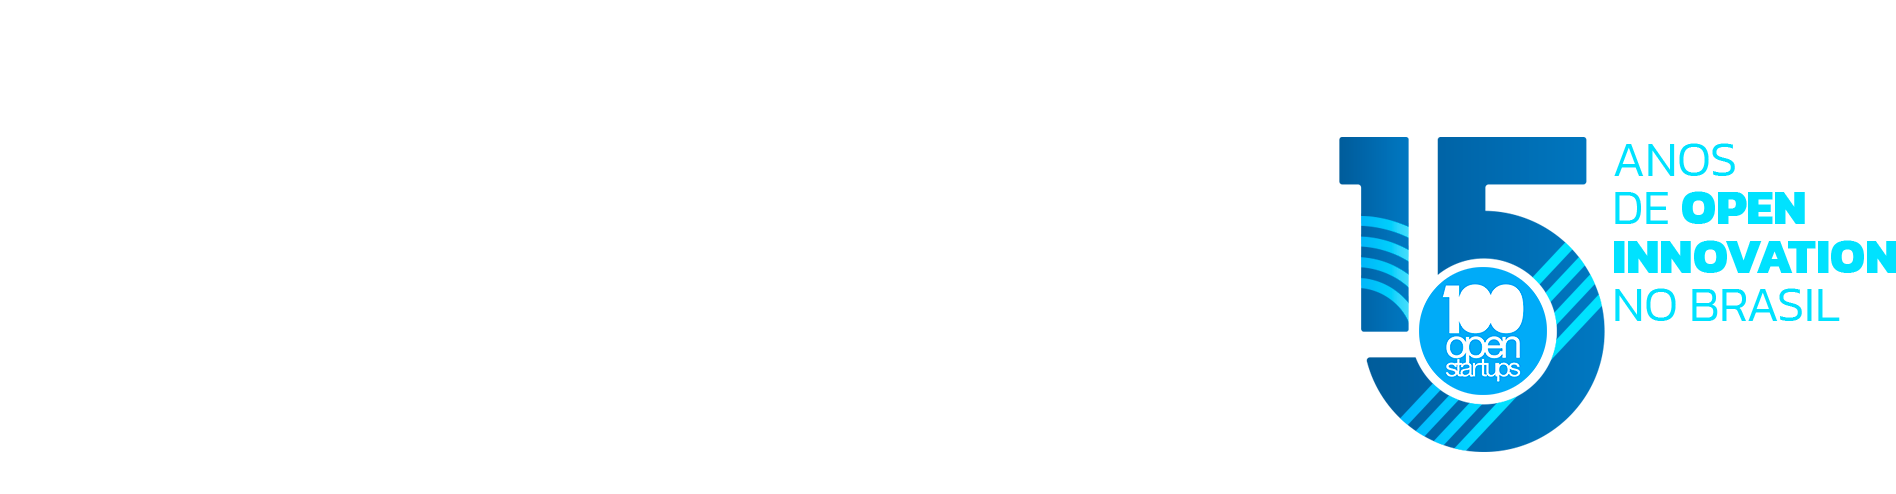 oiweek - open innovation week digital